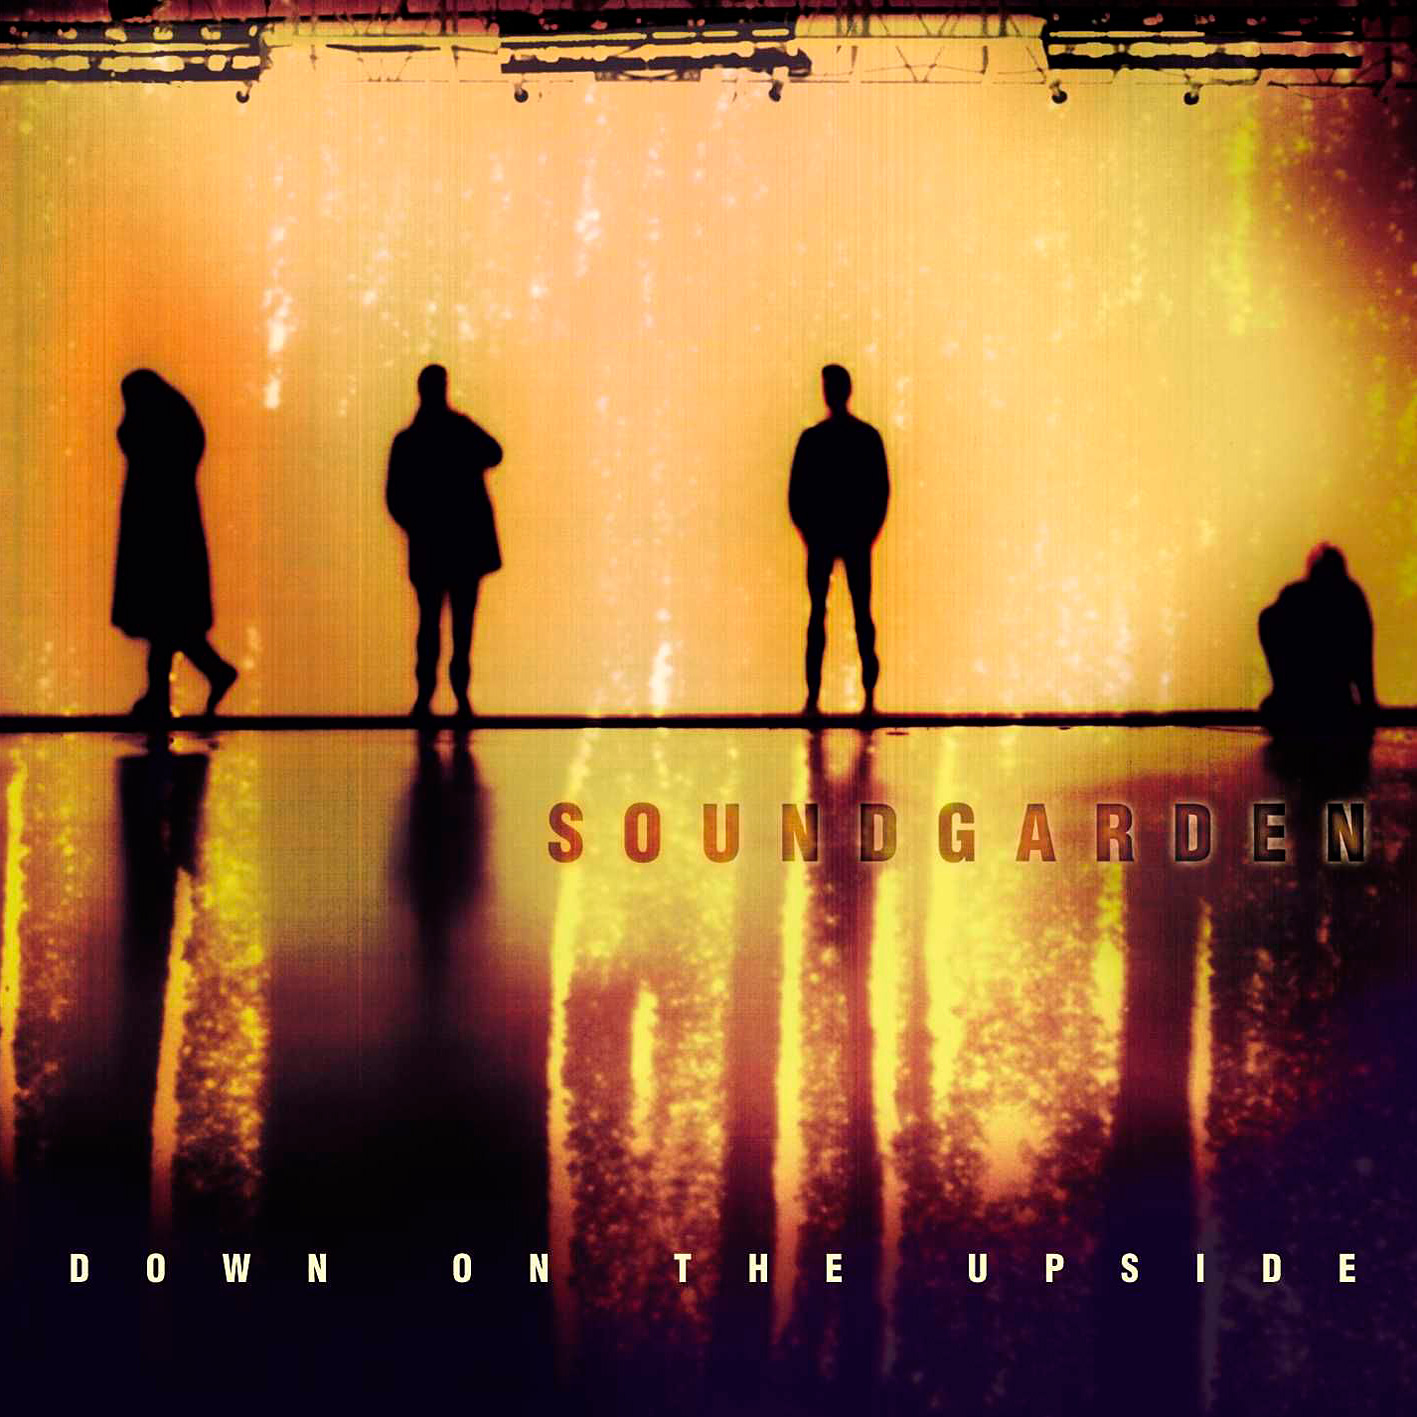 Soundgarden - Down On The Upside (1996/2016) [HDTracks FLAC 24bit/192kHz]